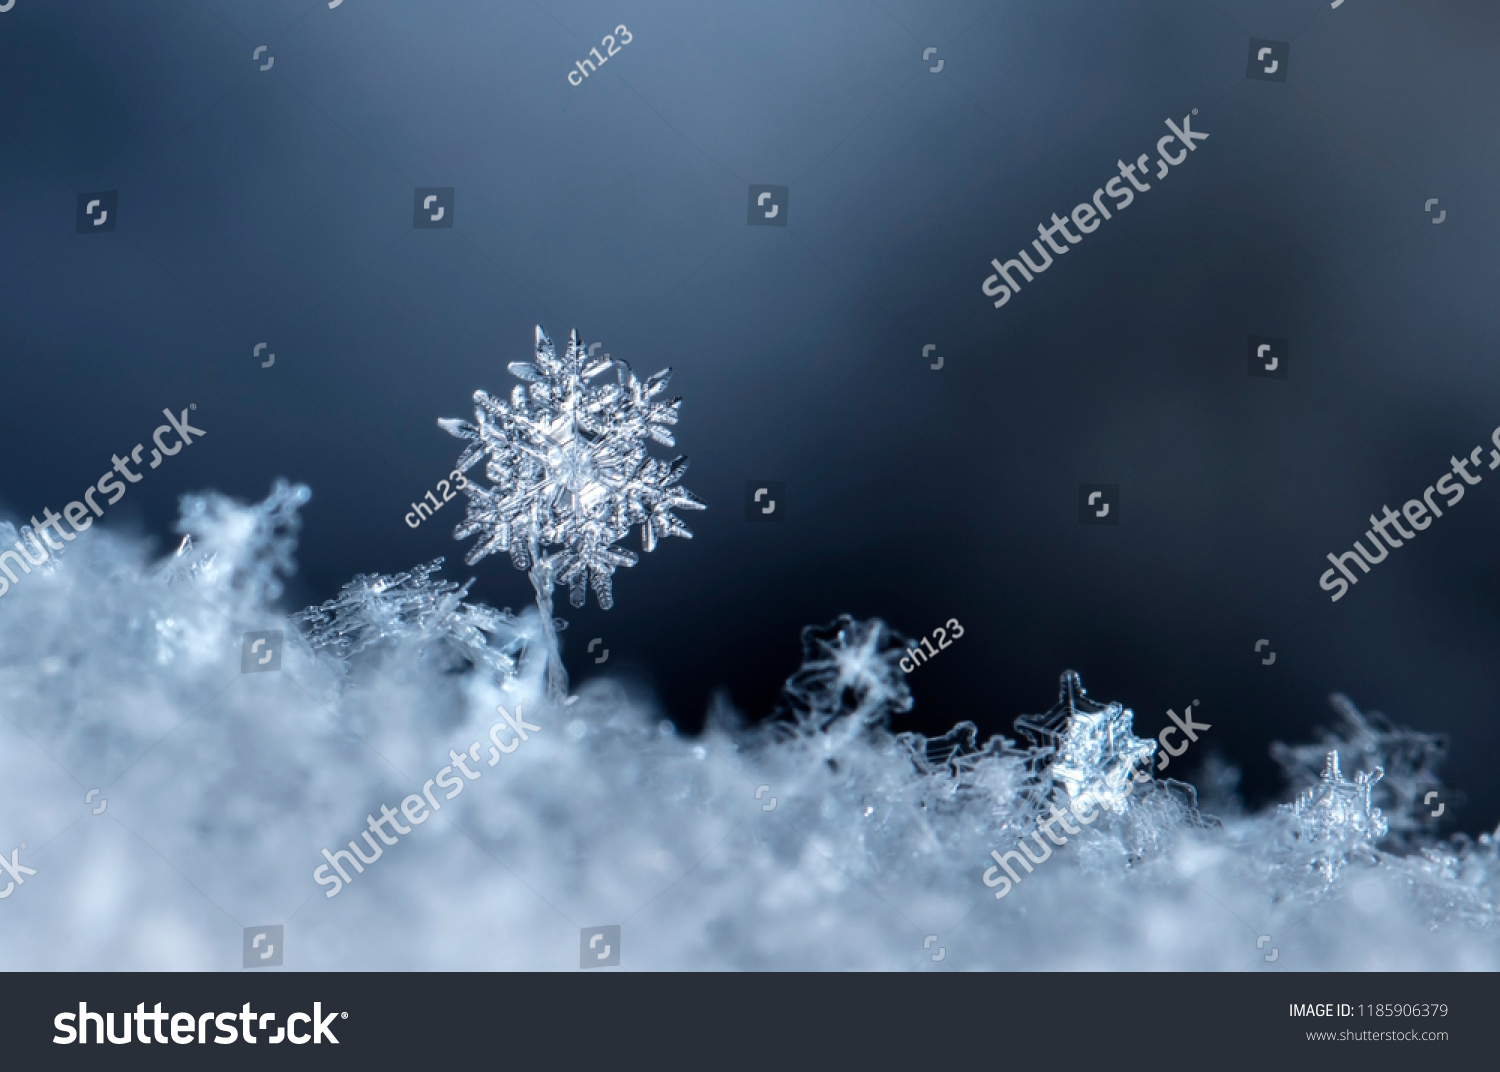 snowflake, little snowflake on the snow #1185906379